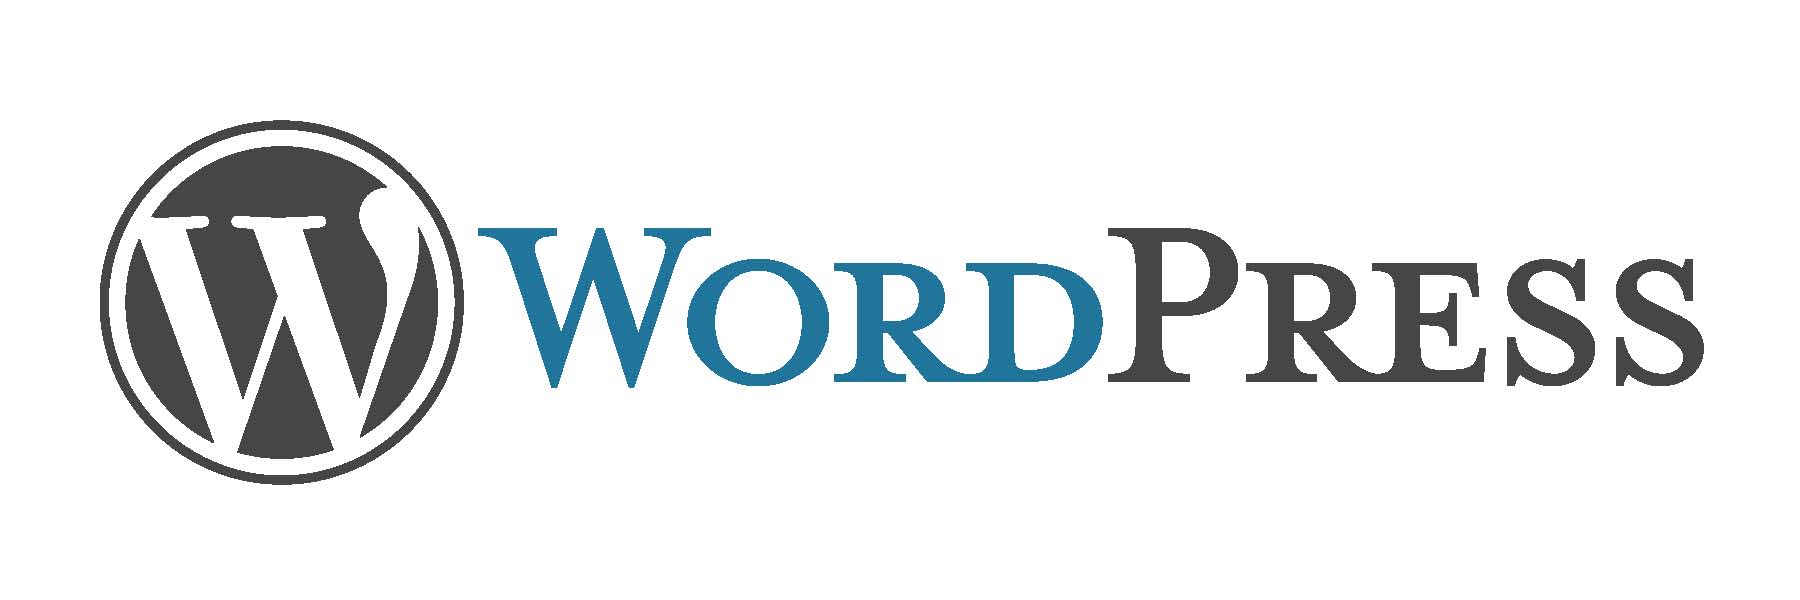 Бесплатный хостинг WordPress